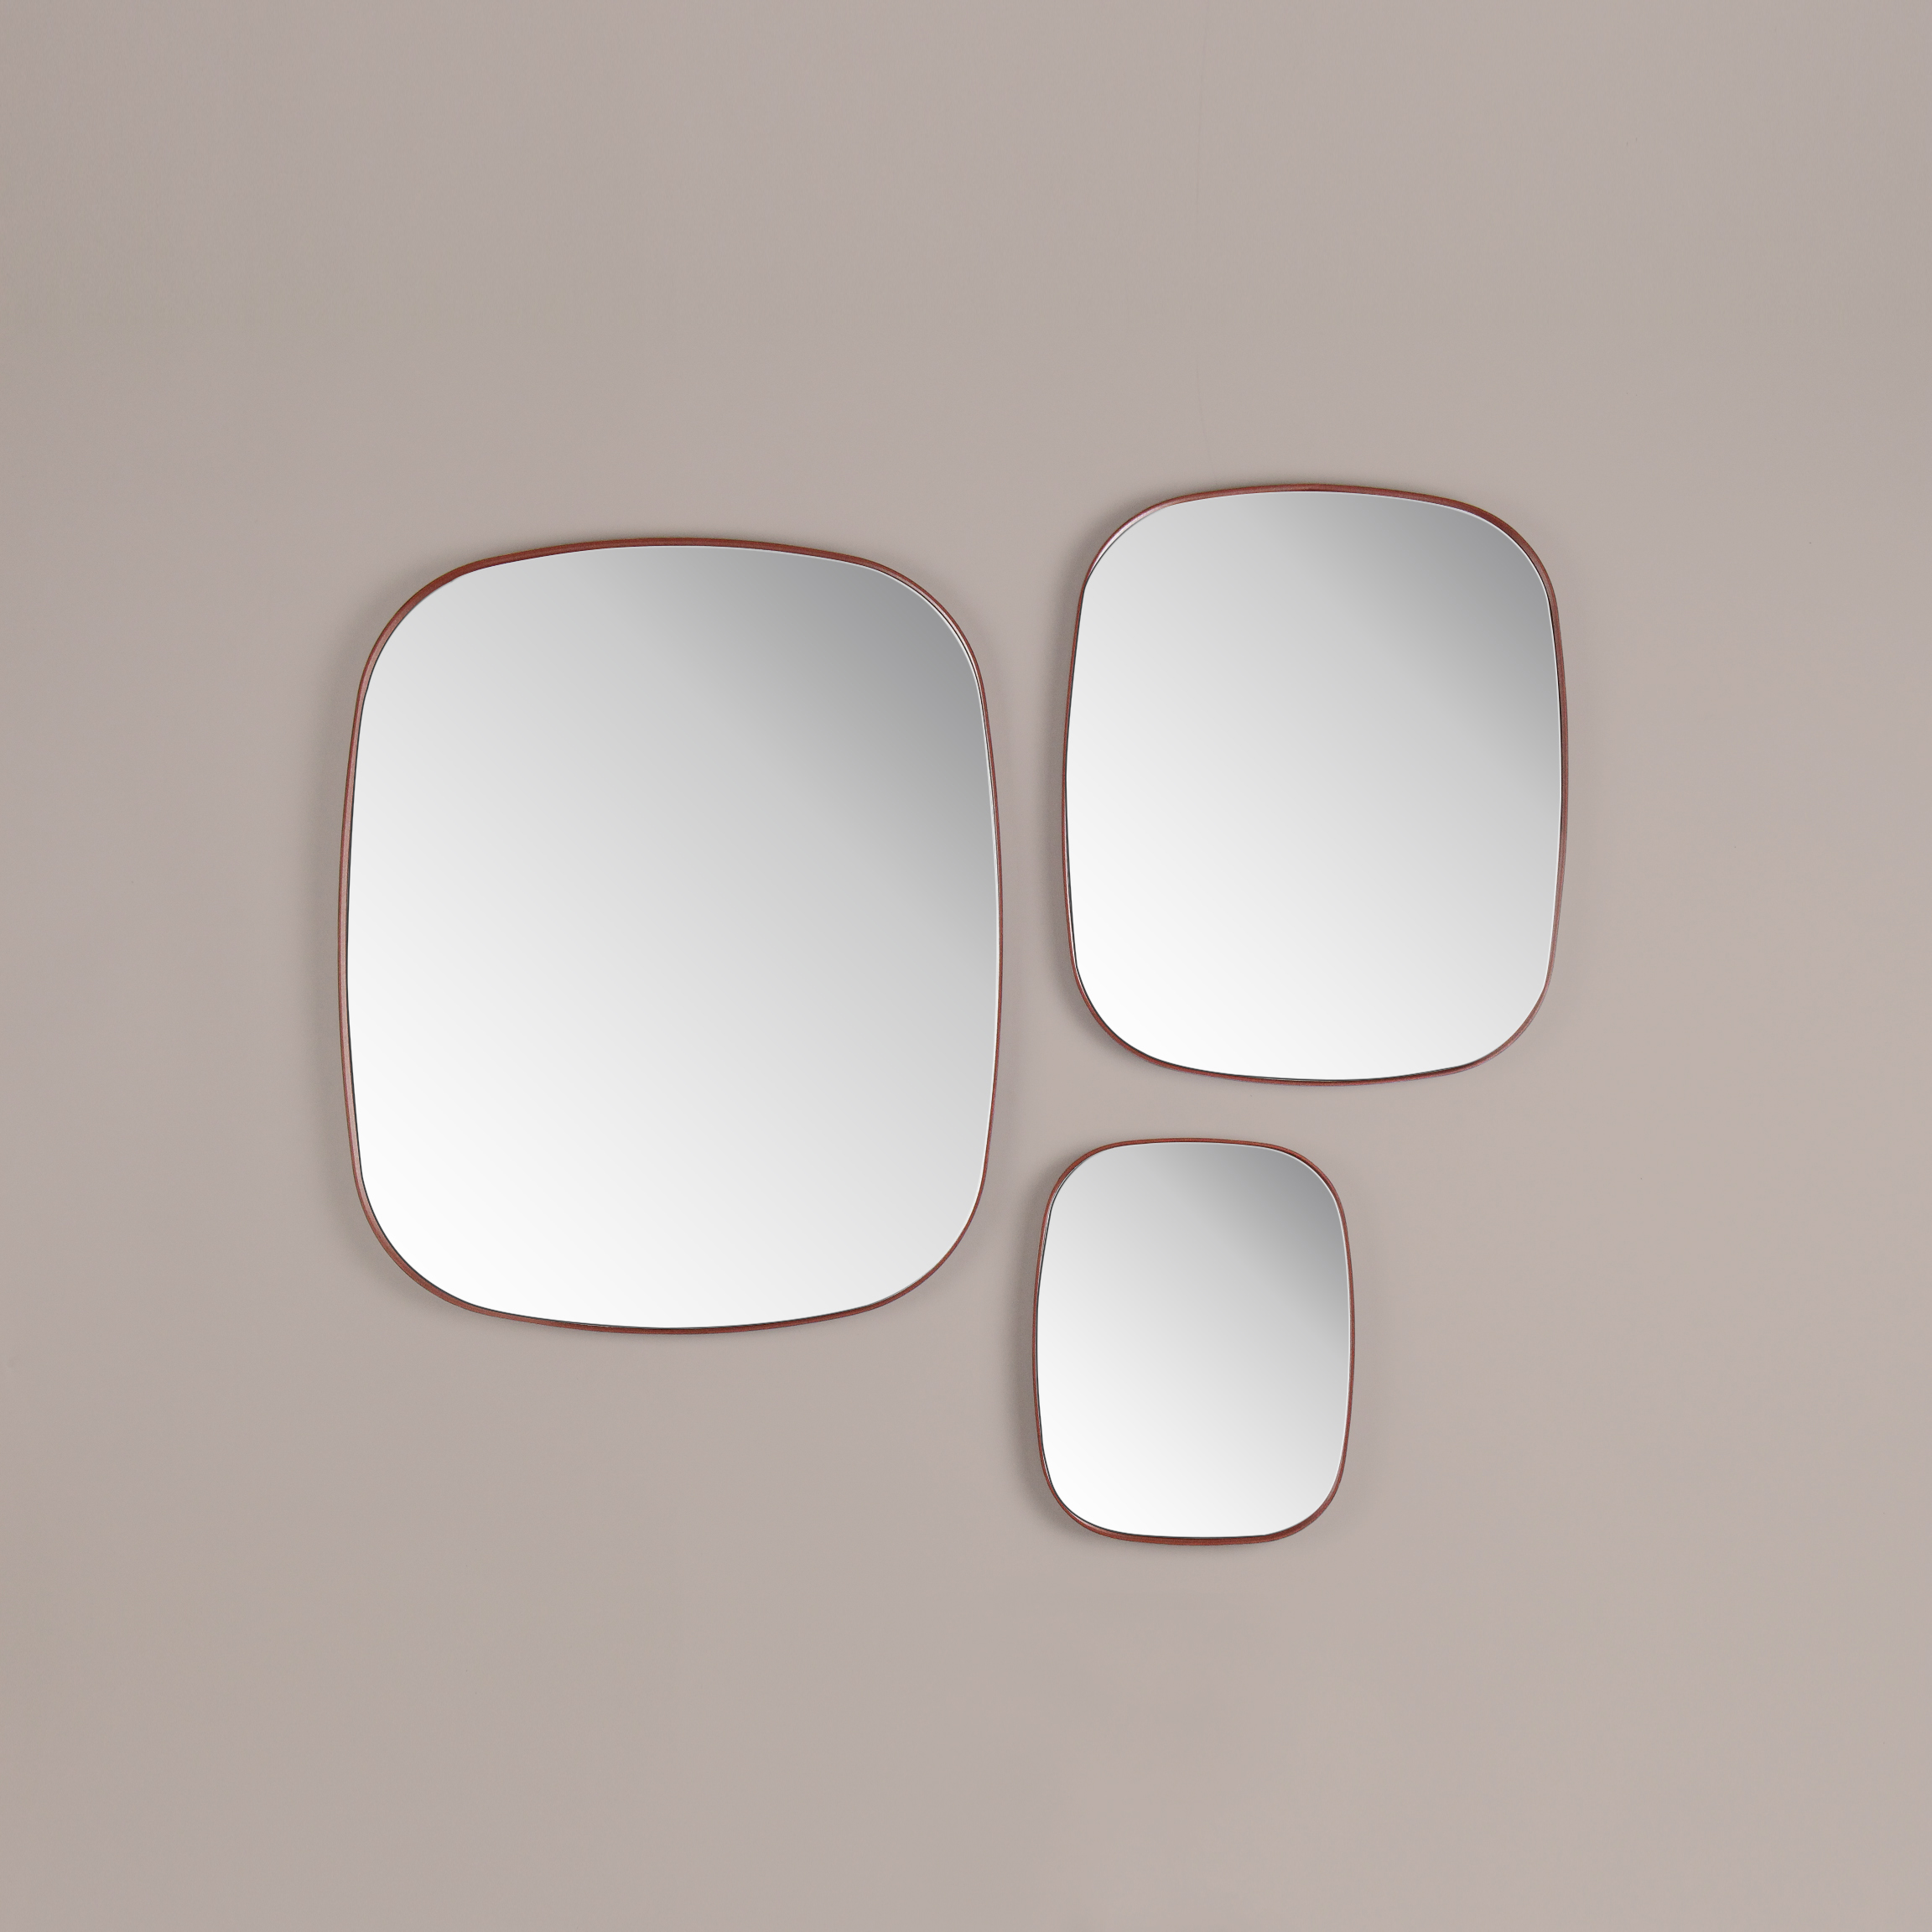 Pool-mirrors-05_rev3